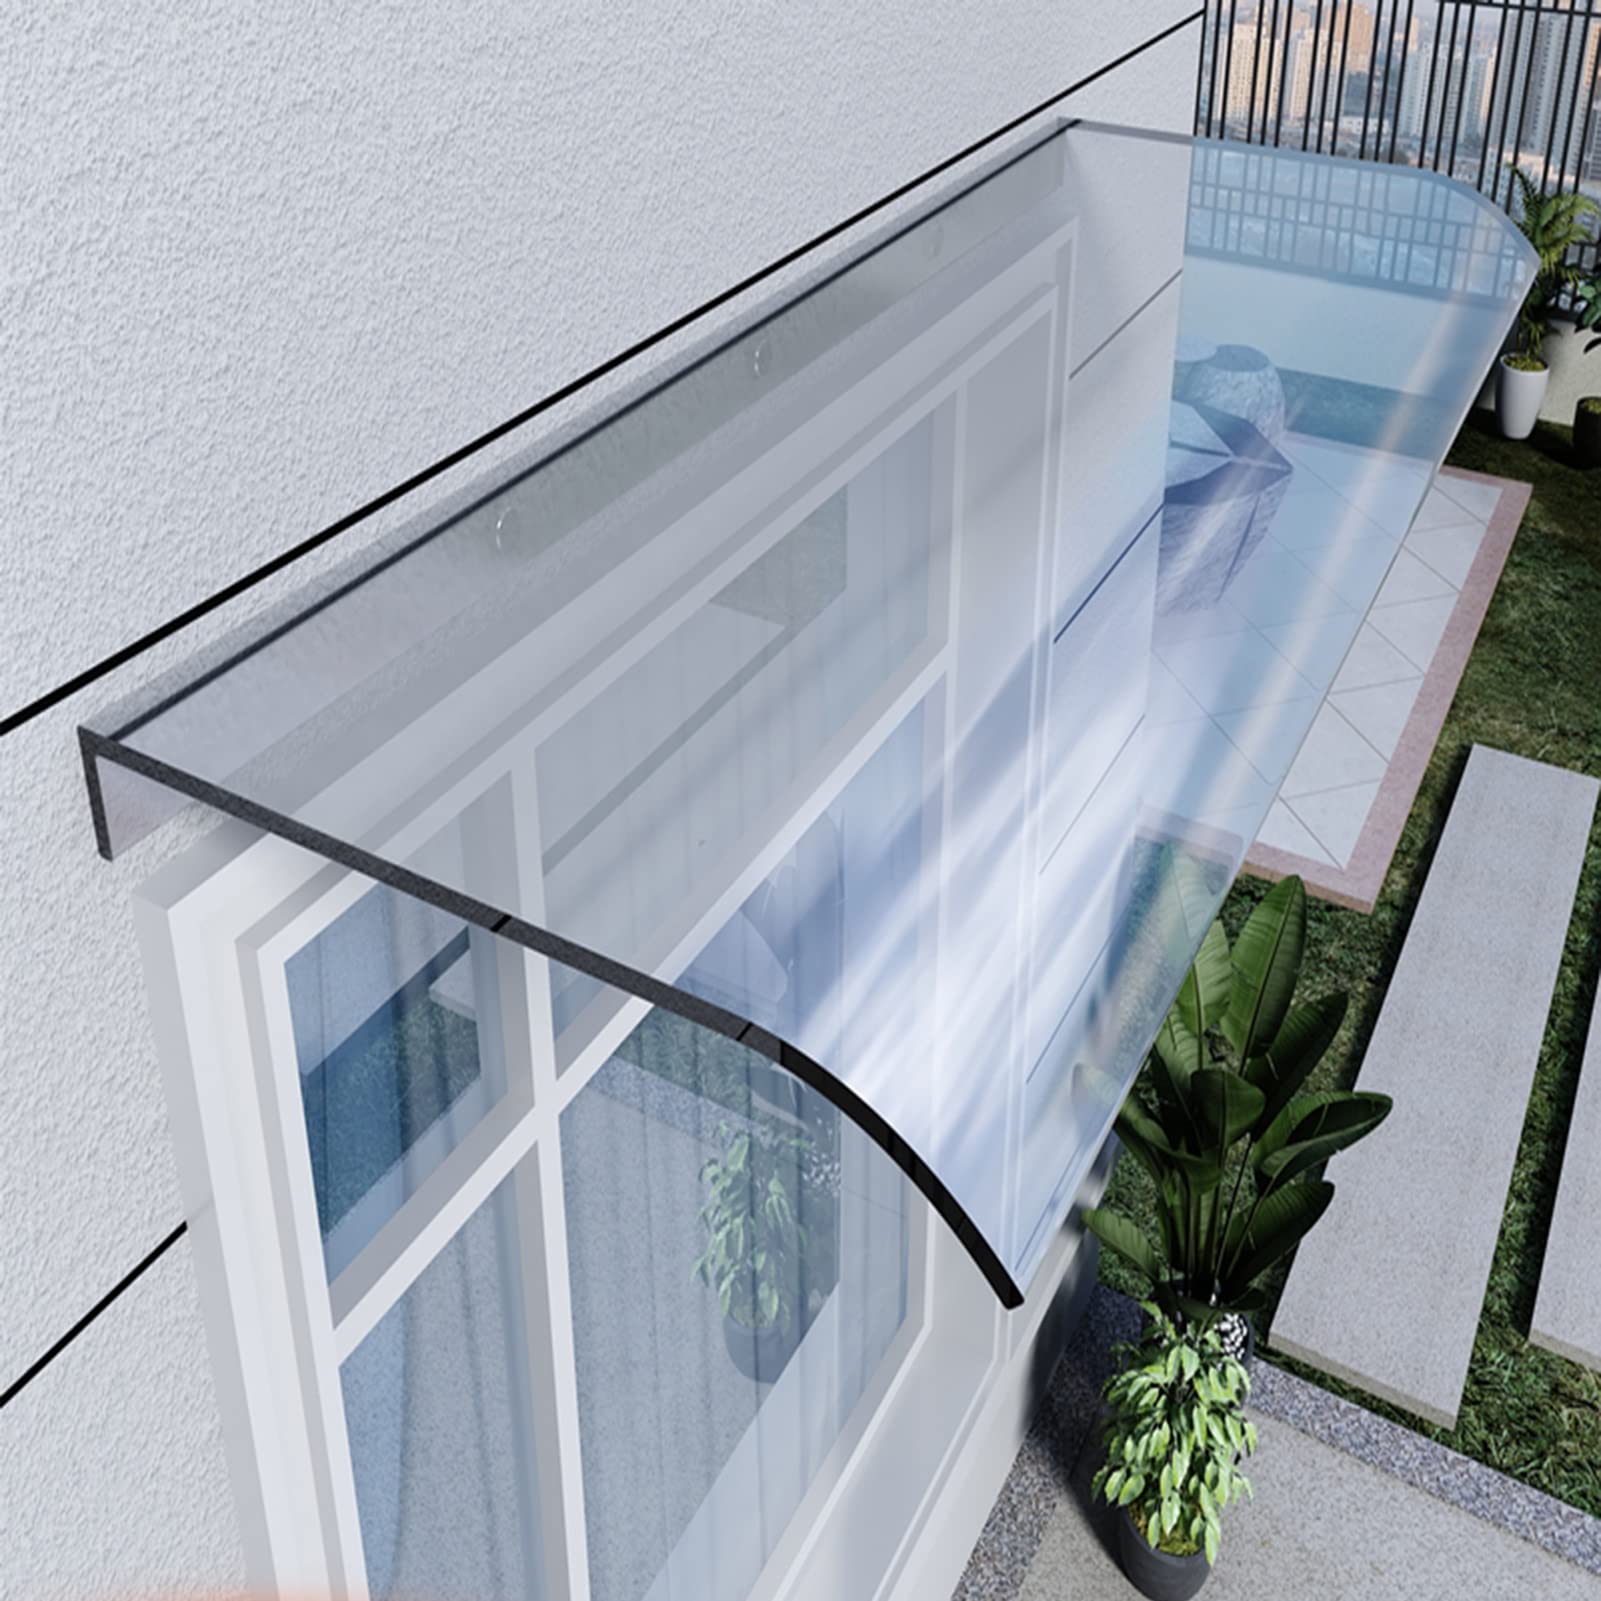 Outdoor -Markise 40x120 cm Vordertür -Baldachin, Polycarbonatfenster Regenschutzabdeckung für Hintertür, Veranda, Fenster (Farbe: Klar, Größe: 40x120 cm/15.75x47.24in)